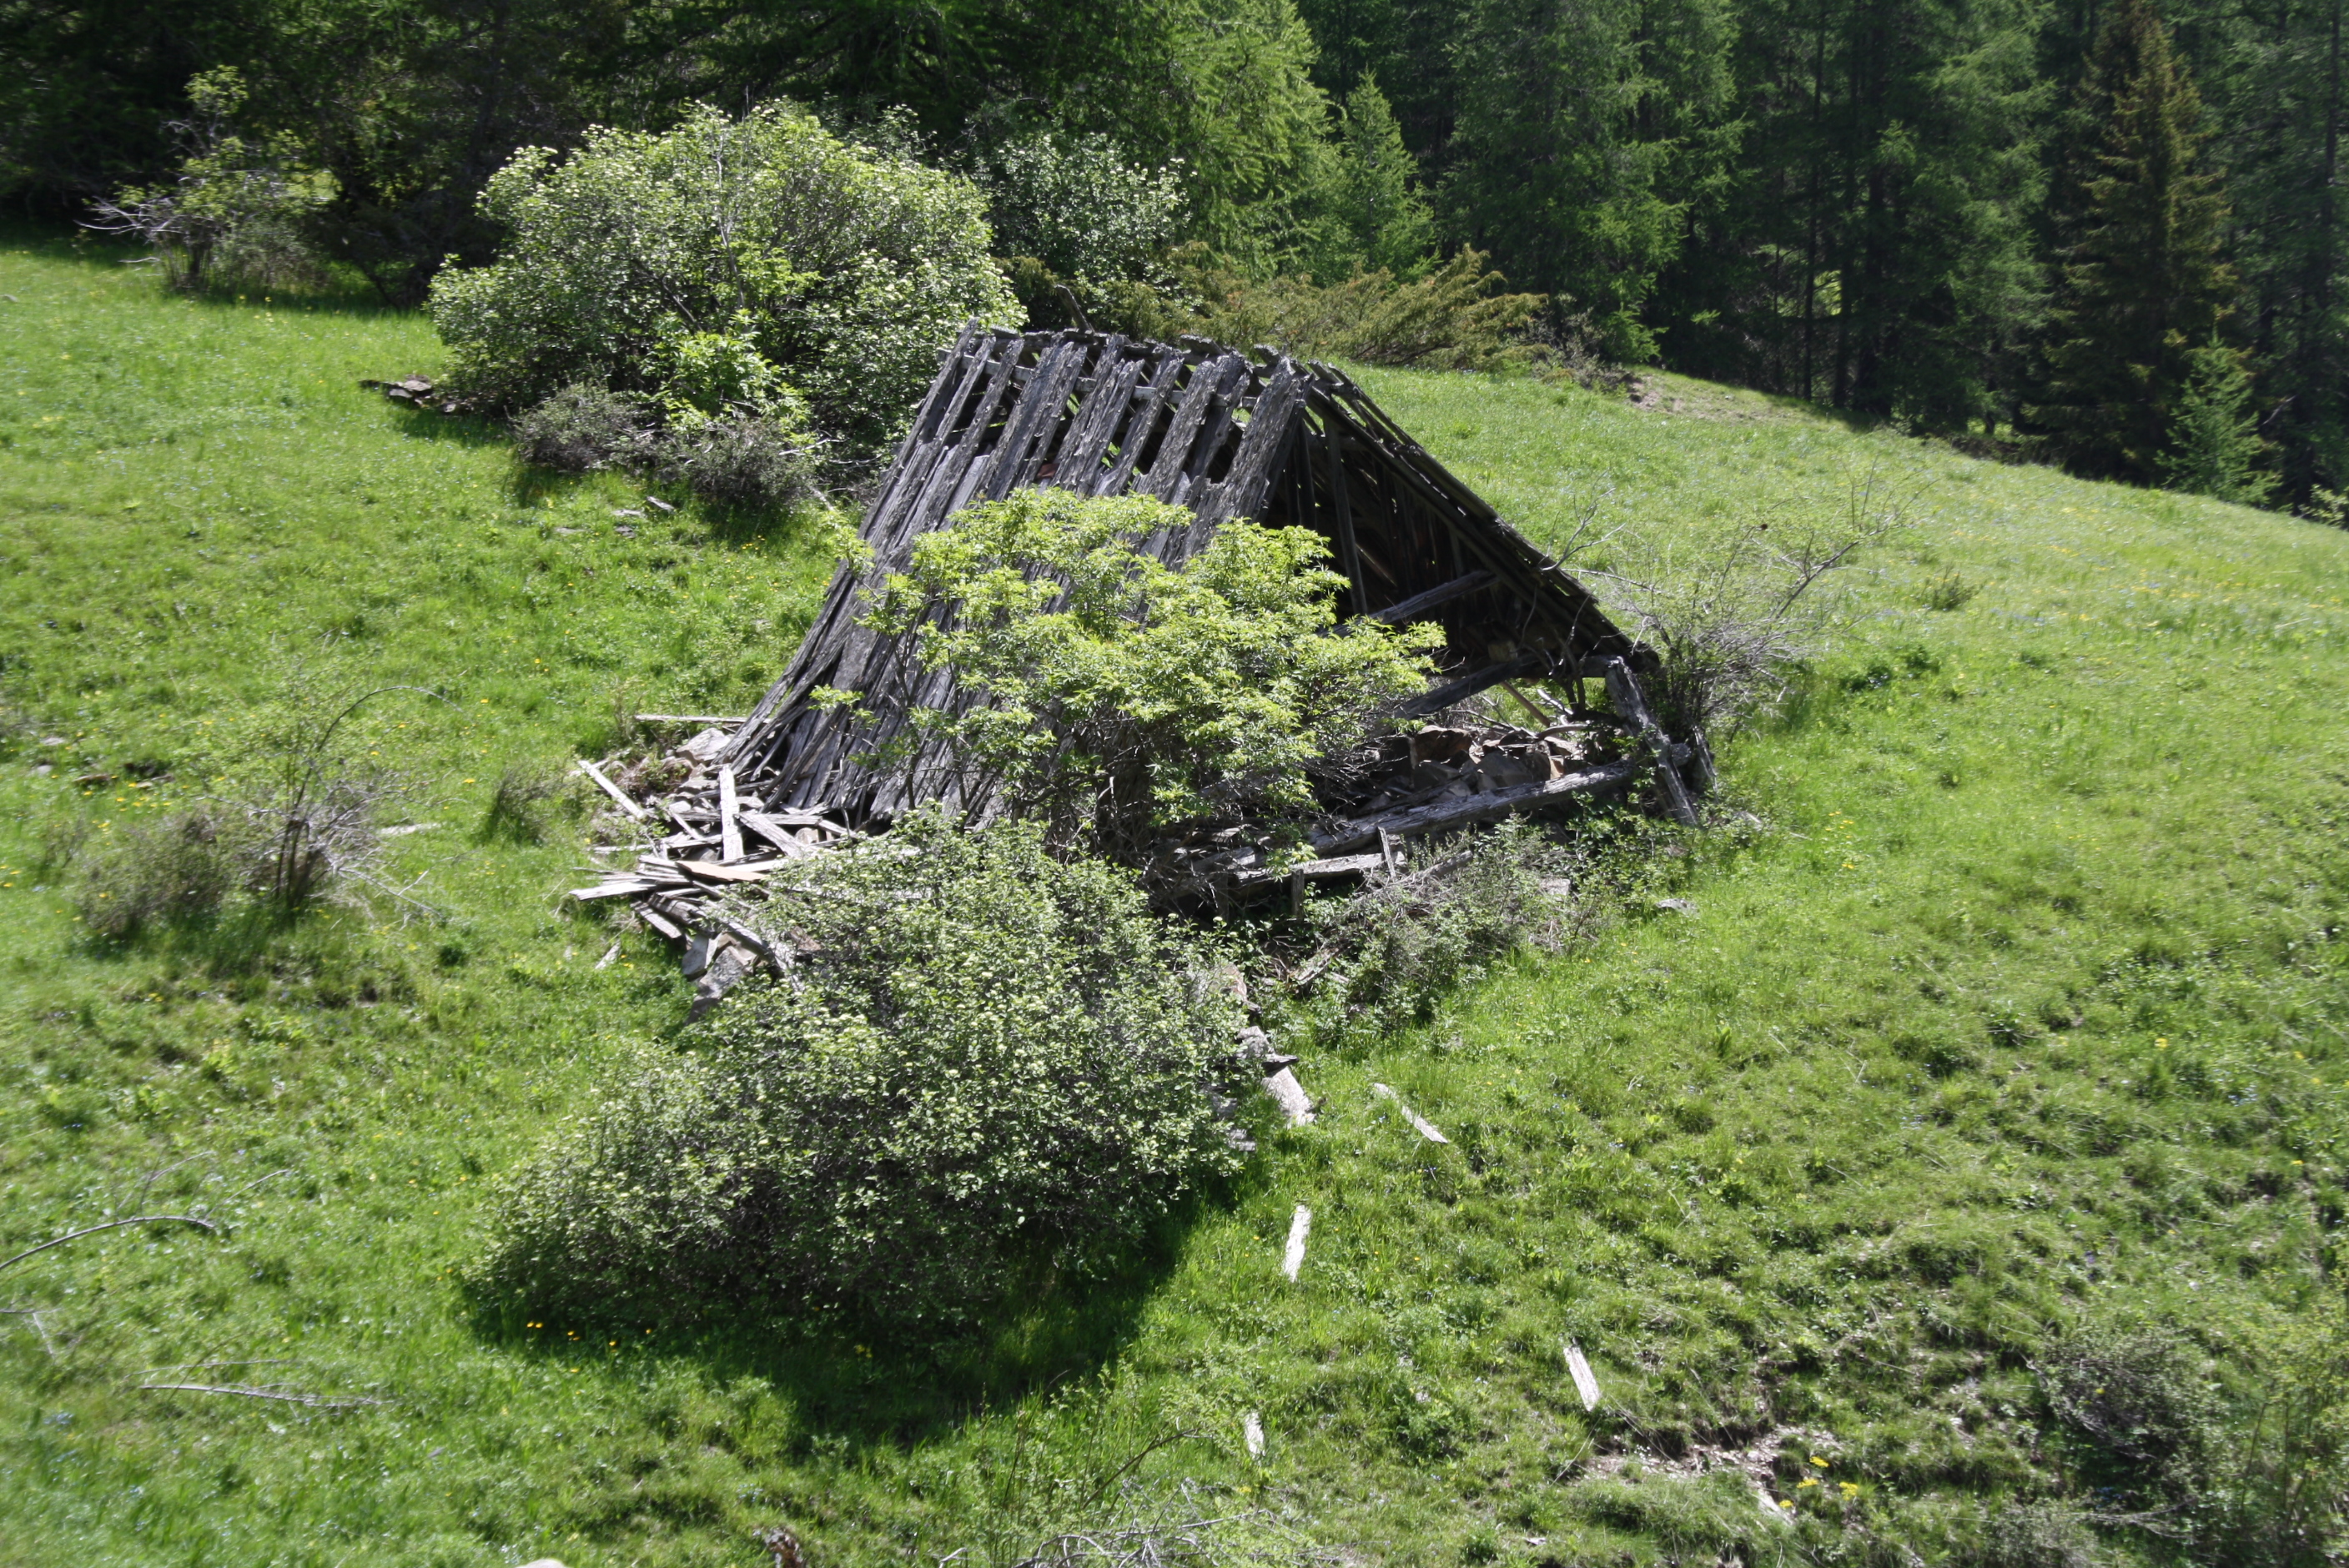 Entrepôt agricole ou cabane ruiné en face du plateau de la Réourié, de l'autre côté du ravin de Chasse. La charpente indépendante et le toit en mélèze ont mieux résisté que la maçonnerie.